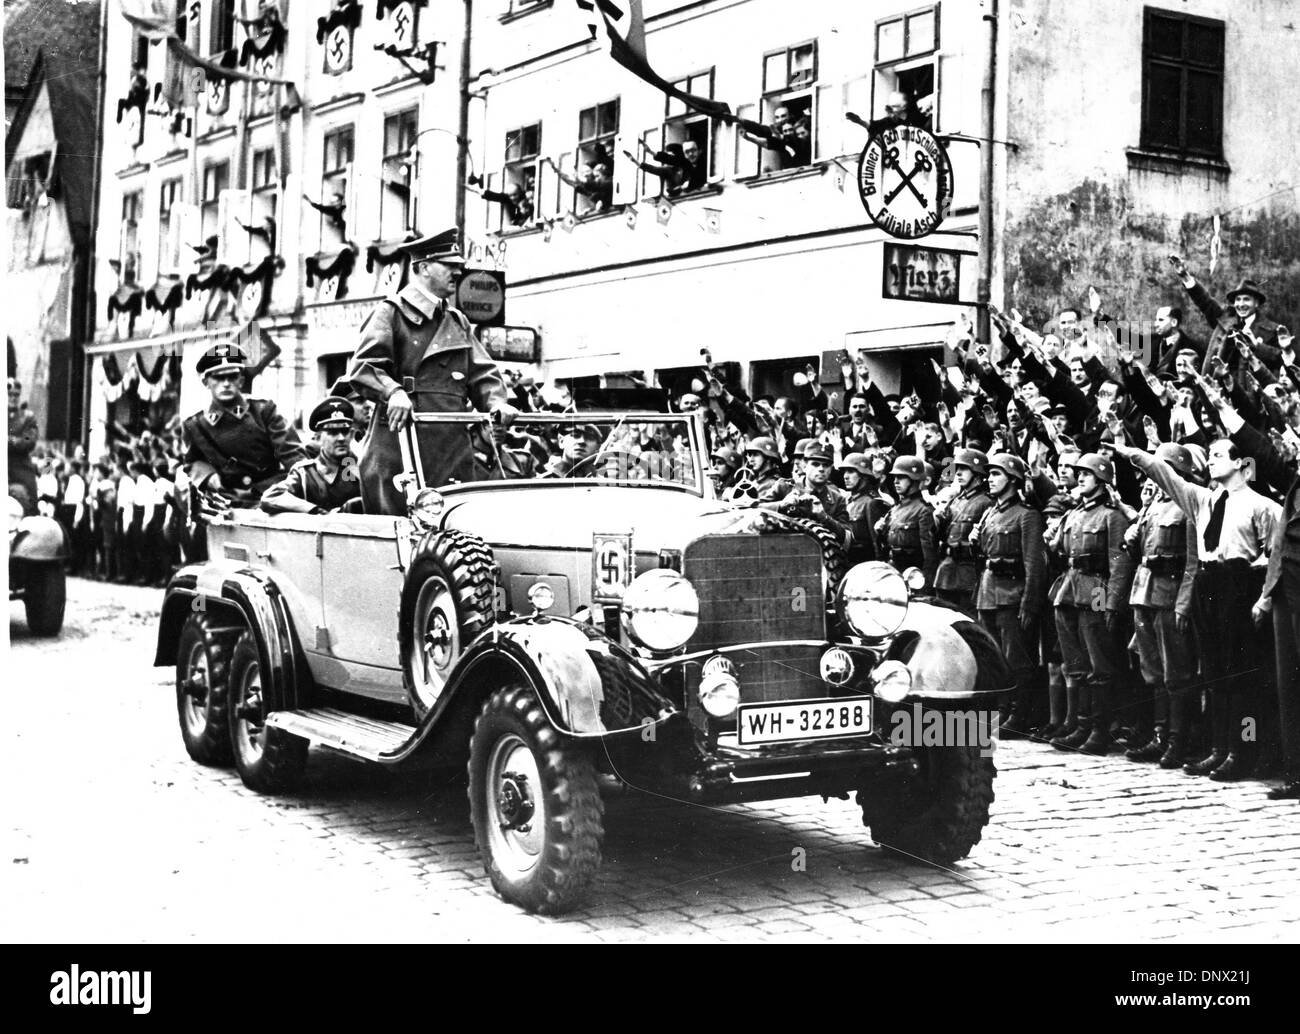 20 septembre 1938 - Sudètes, en Tchécoslovaquie - Adolf Hitler à cheval dans les rues de Sudètes. Adolf Hitler (20 avril 1889 ÐApril 30, 1945) a été le Führer und Reichskanzler (chancelier) et leader de l'Allemagne de 1933 à sa mort. Il était chef du parti national-socialiste des travailleurs allemands (NSDAP), mieux connu sous le nom de Parti nazi. (Crédit Image : © Keystone Photo Banque D'Images